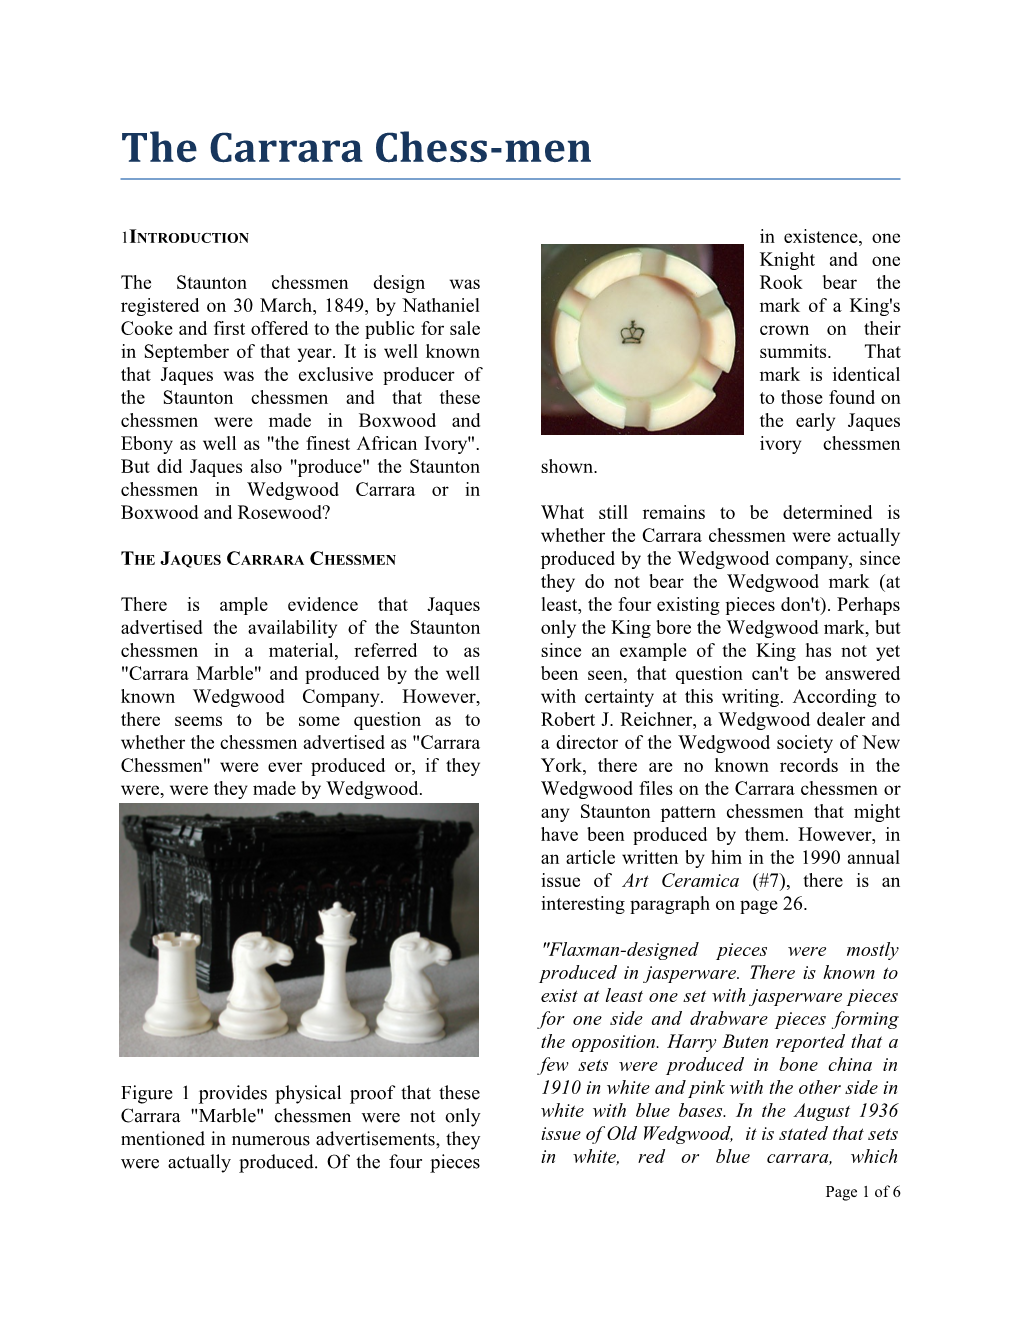 The Carrara Chess-Men